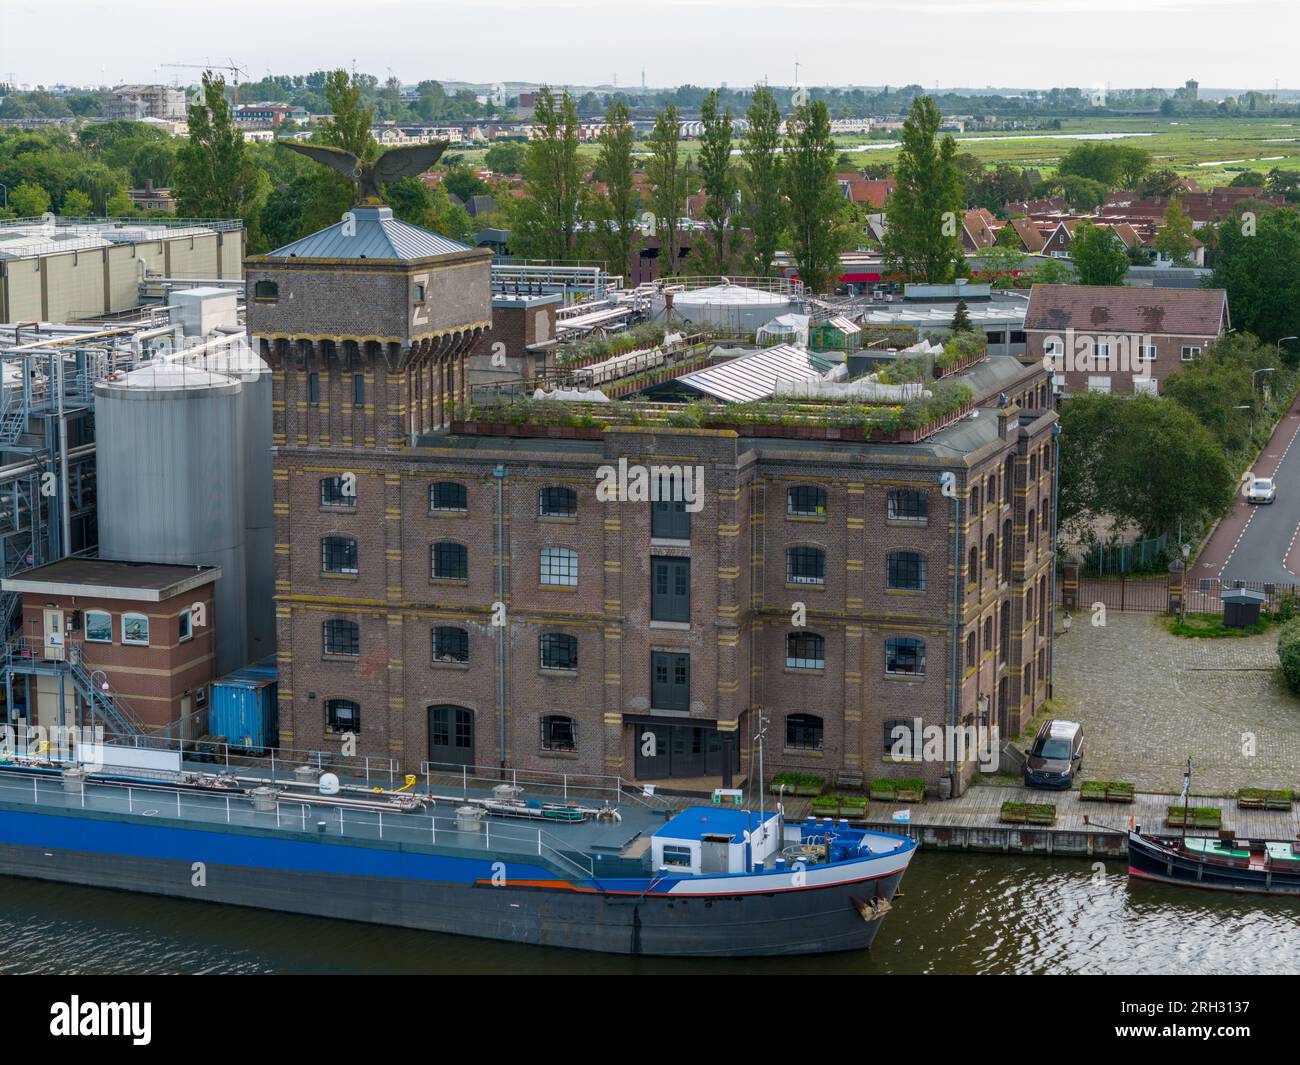 Foto aerea con drone di una chiatta da carico attraccata in una zona industriale a Wormerveer, nei Paesi Bassi Foto Stock